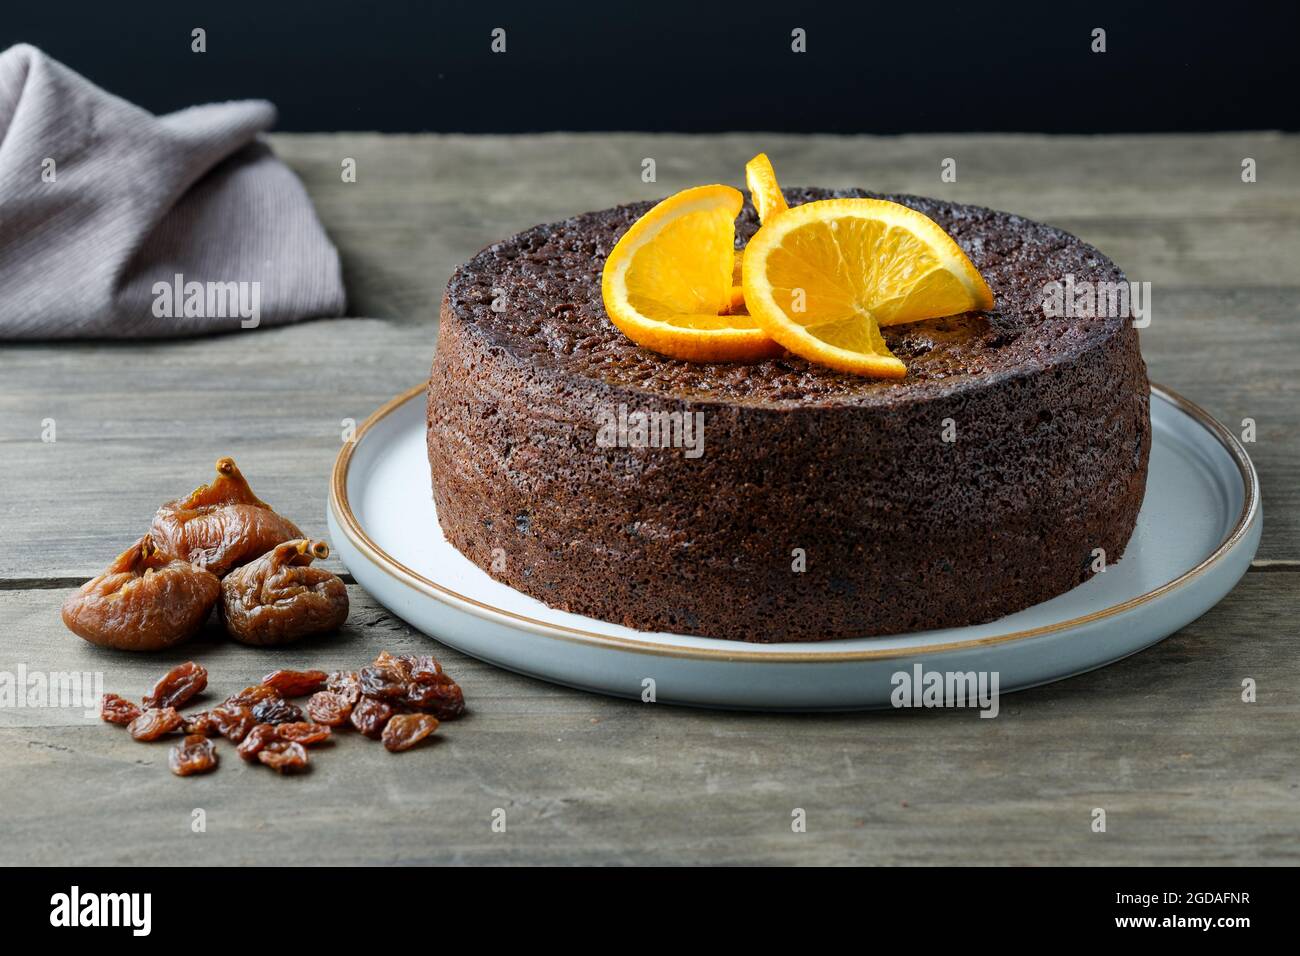 Una torta fatta in casa di arancia, cioccolato, frutta con una ricetta Nigella Lawson. La torta umida è decorata con fette di arancio fresco Foto Stock